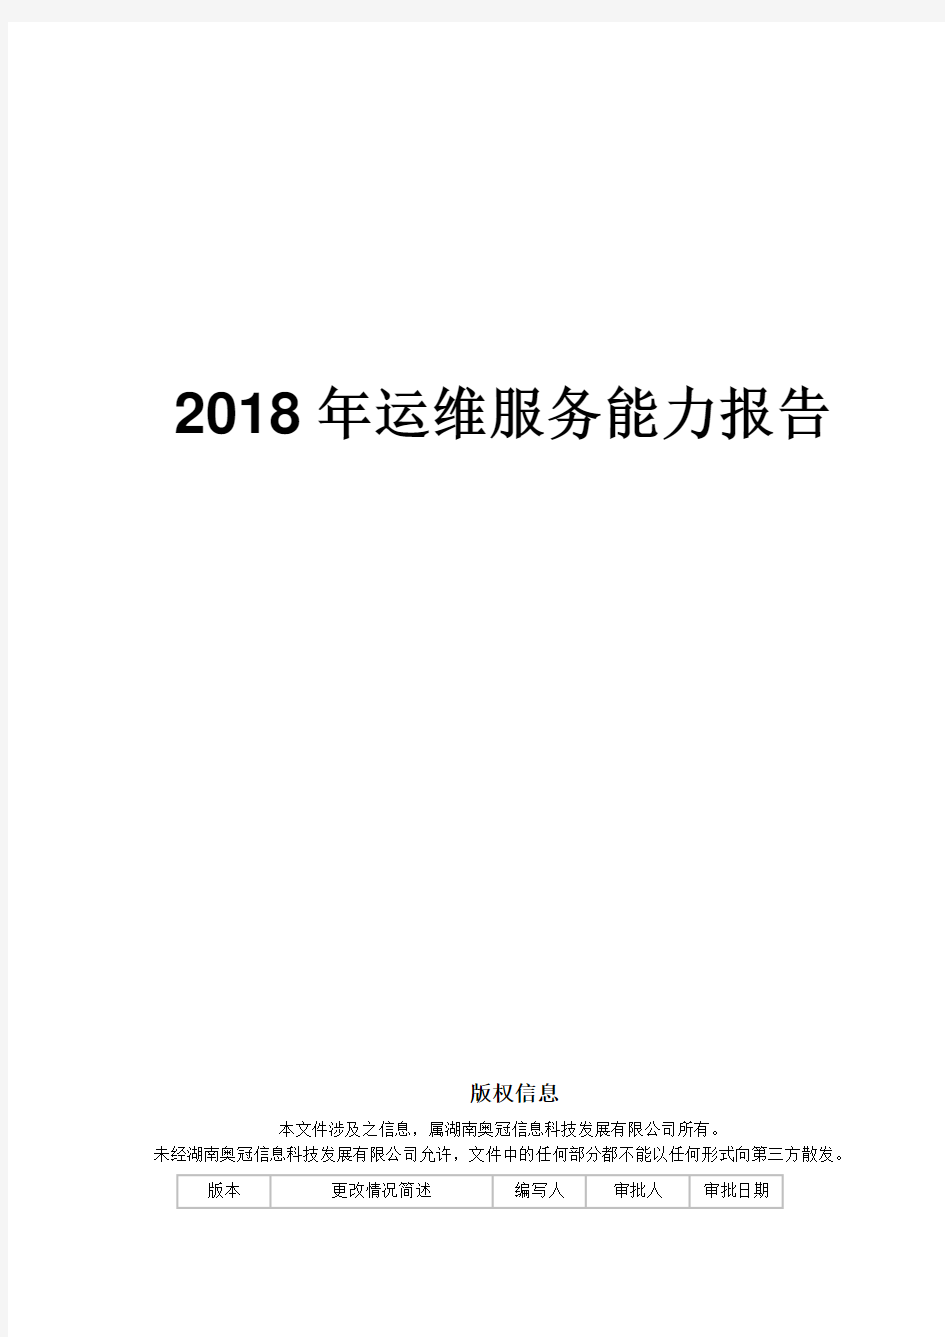 2018年度运维服务能力报告